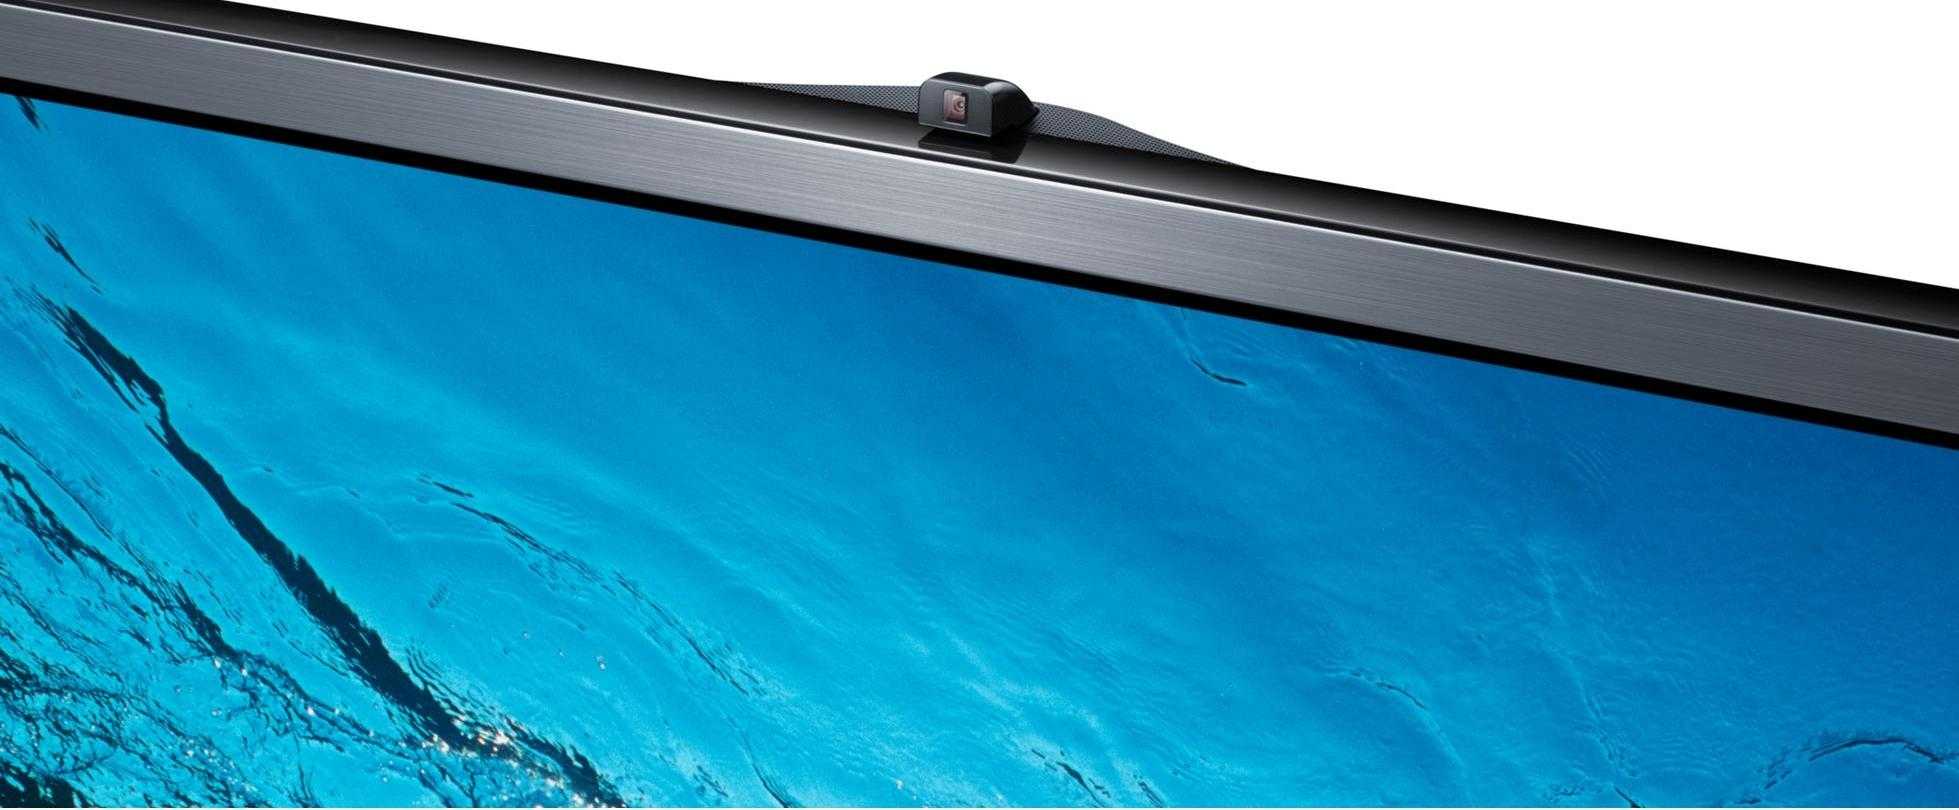 Samsung ps60f8500 купить по акционной цене , отзывы и обзоры.